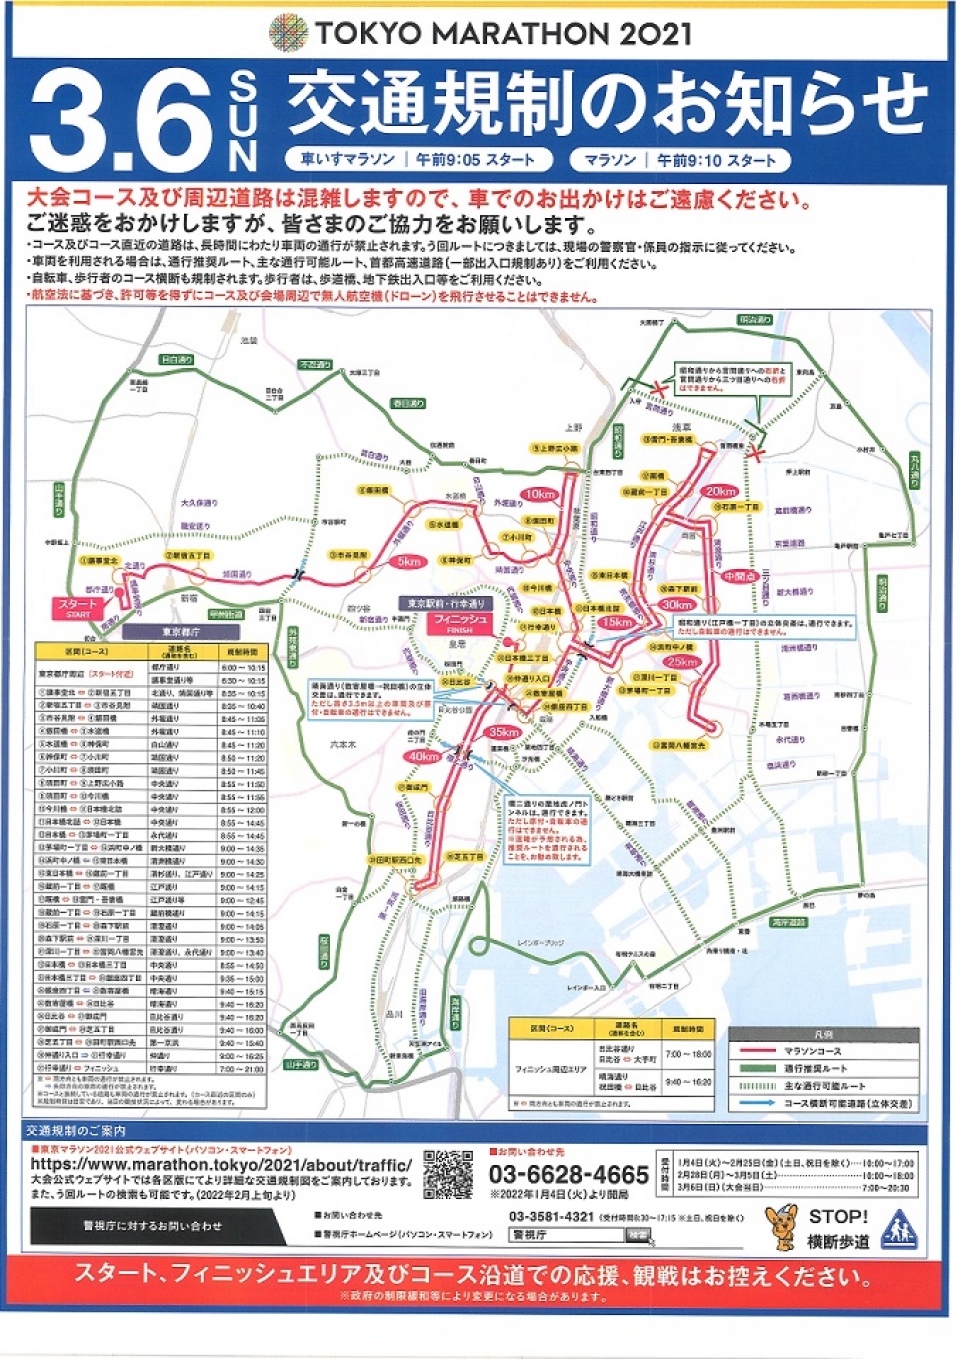 3月6日「東京マラソン2021」開催に伴う交通規制によりスカイバス全便運休のお知らせ